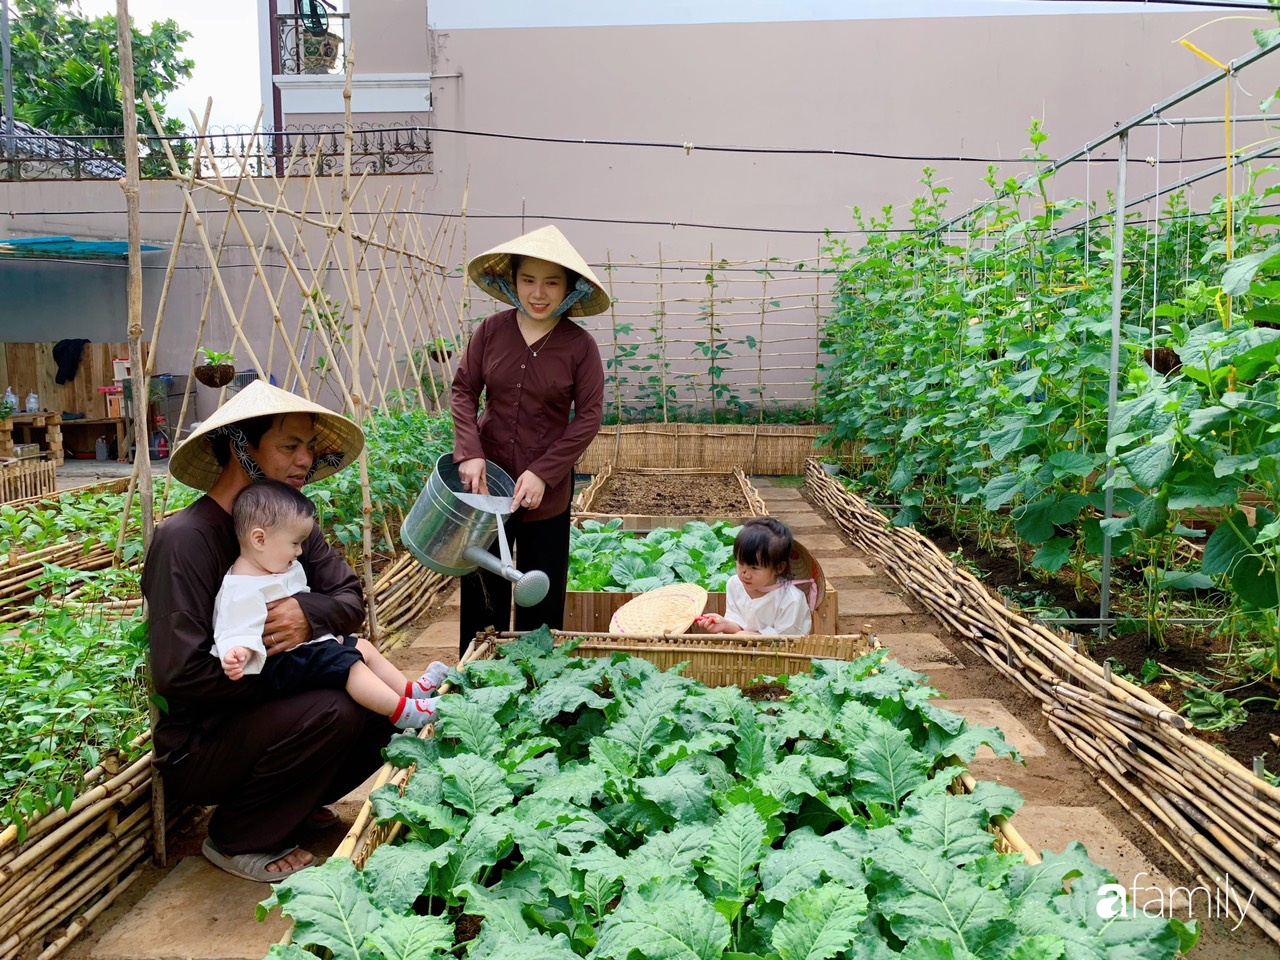 Gia đình trẻ cải tạo vườn rau xanh tốt cho các con chơi như khu vườn tuổi  thơ